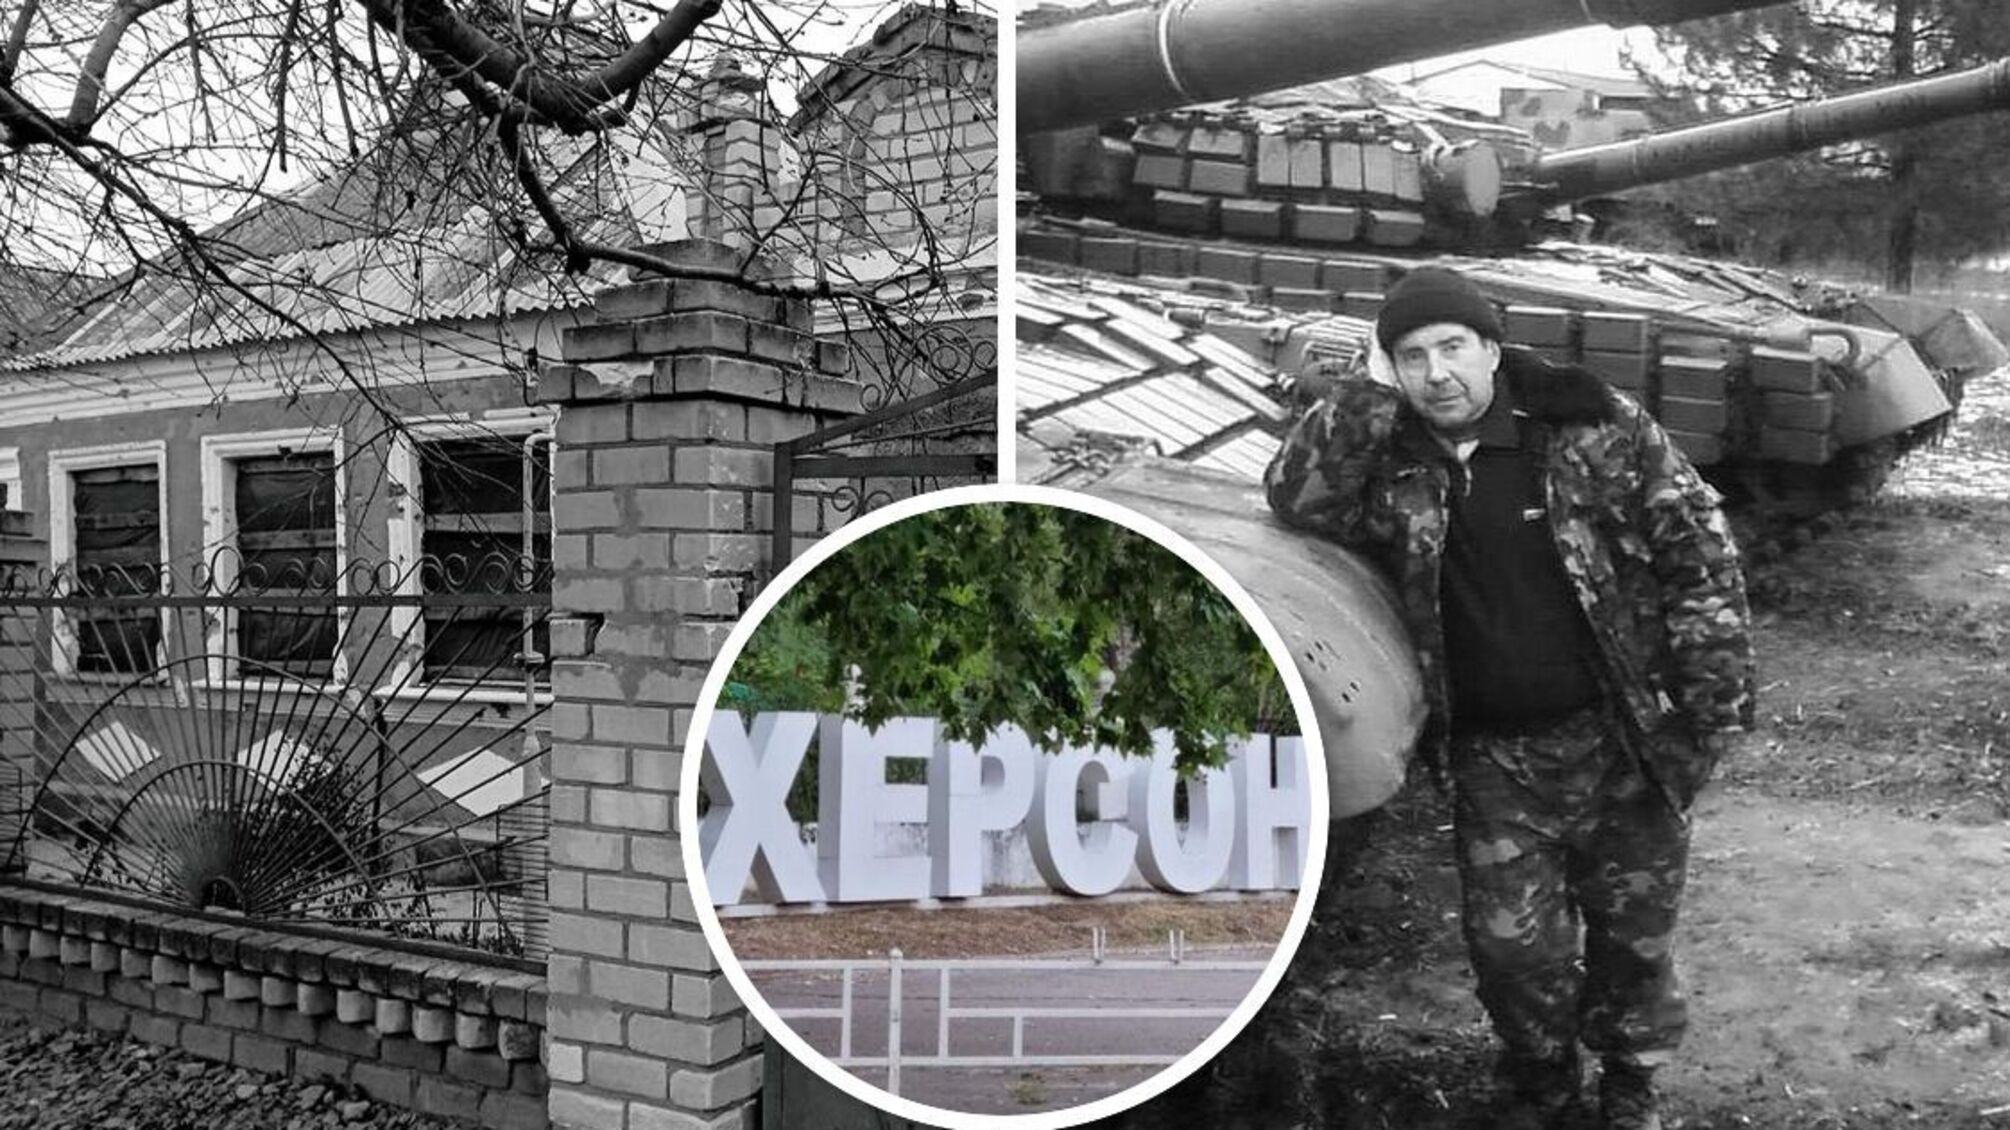 Херсон: дом, где скрывались украинские партизаны